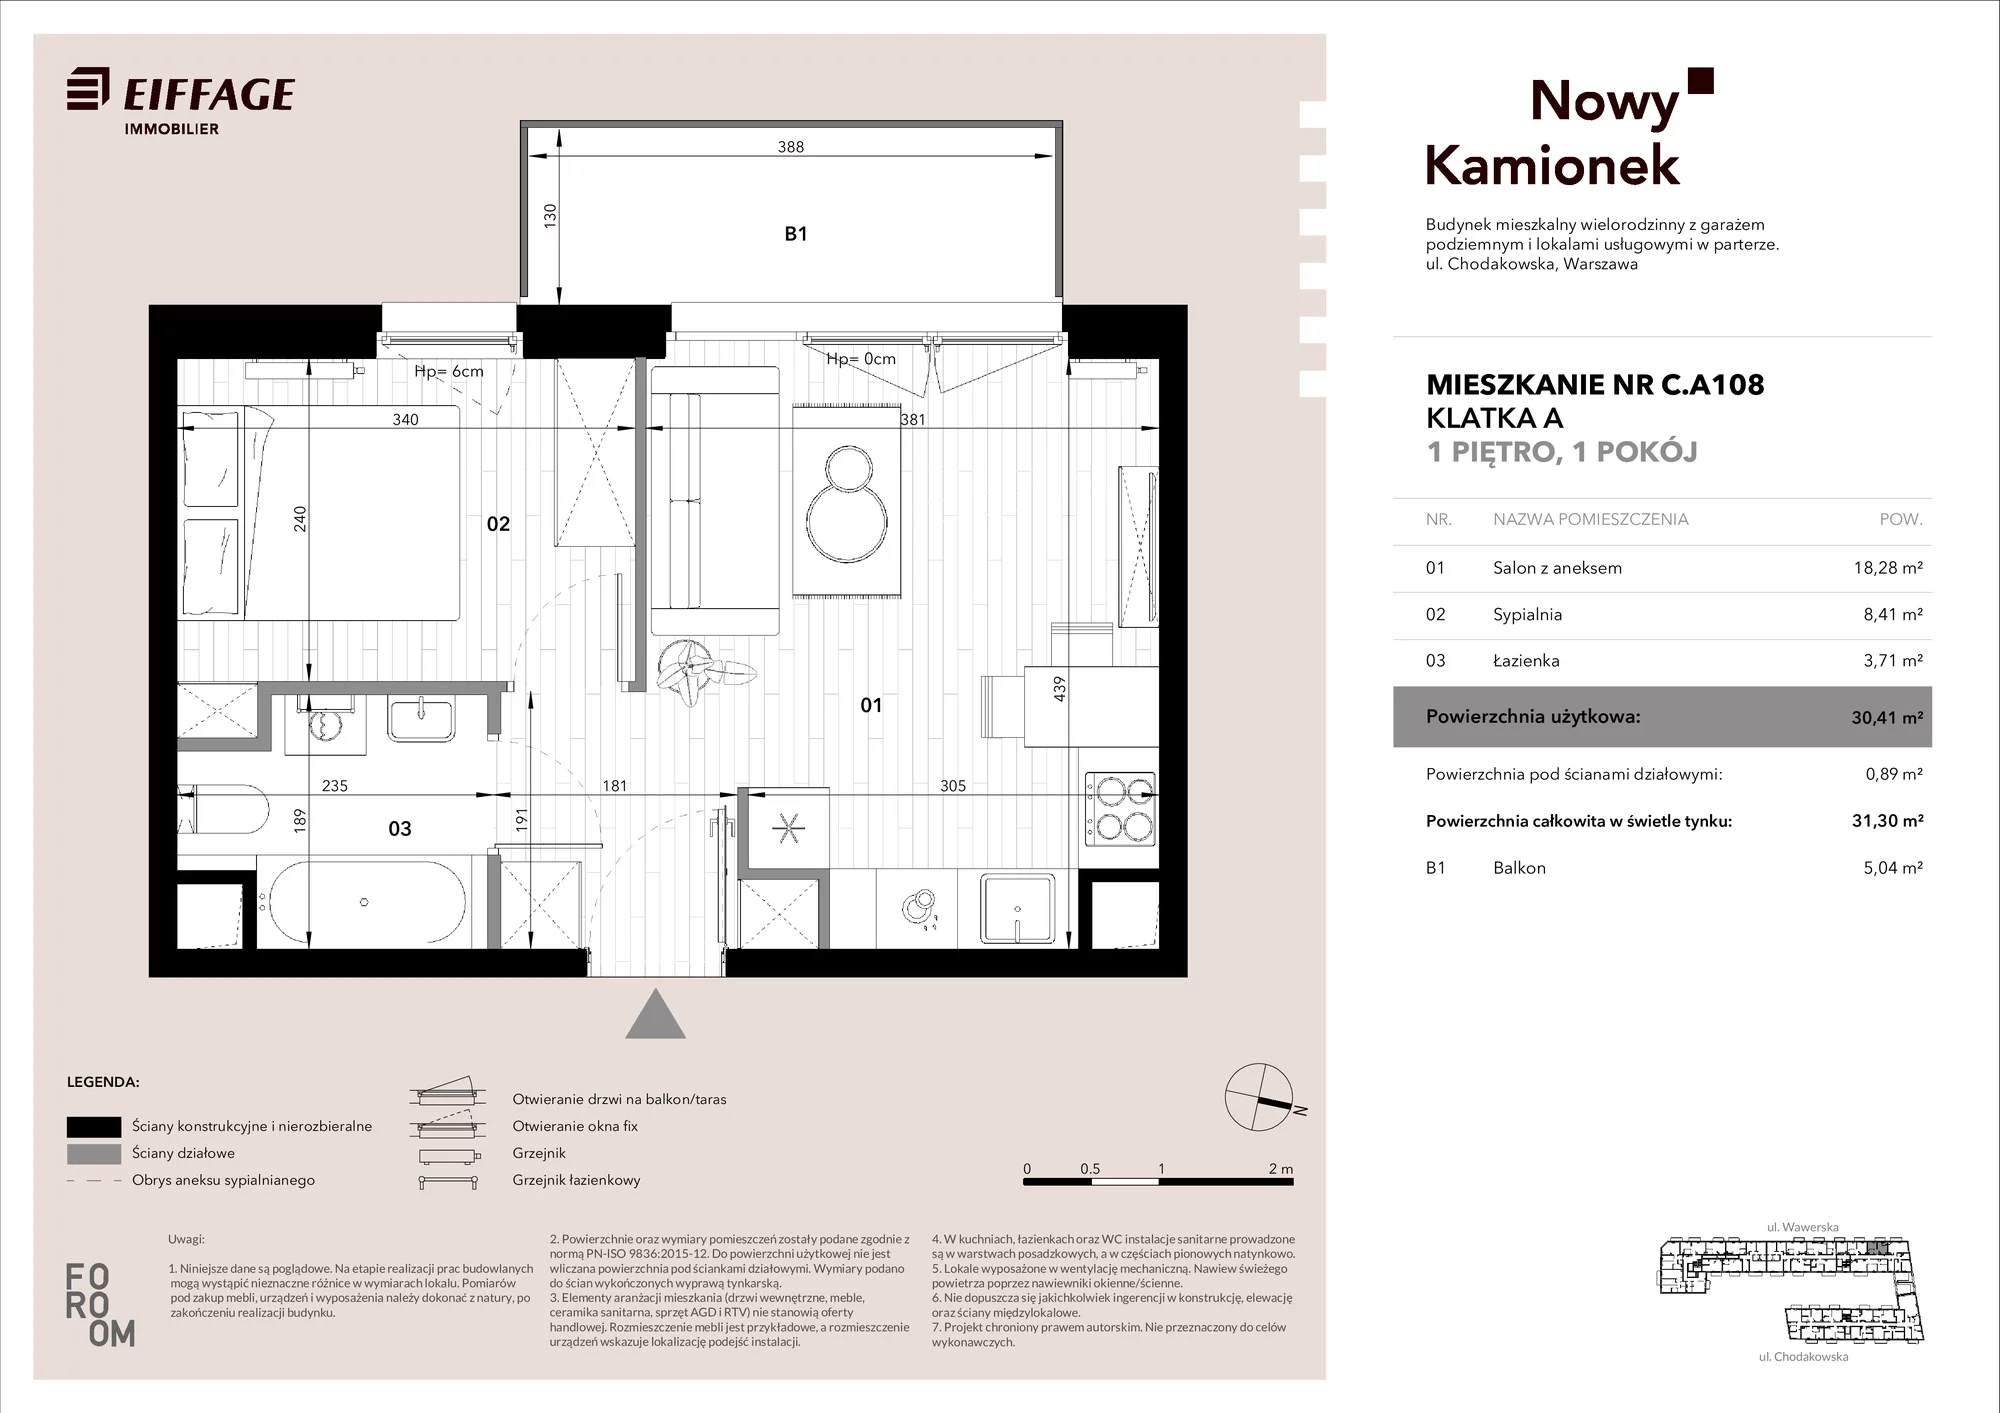 Mieszkanie 30,41 m², piętro 1, oferta nr C.A108, Nowy Kamionek, Warszawa, Praga Południe, Kamionek, ul. Chodakowska